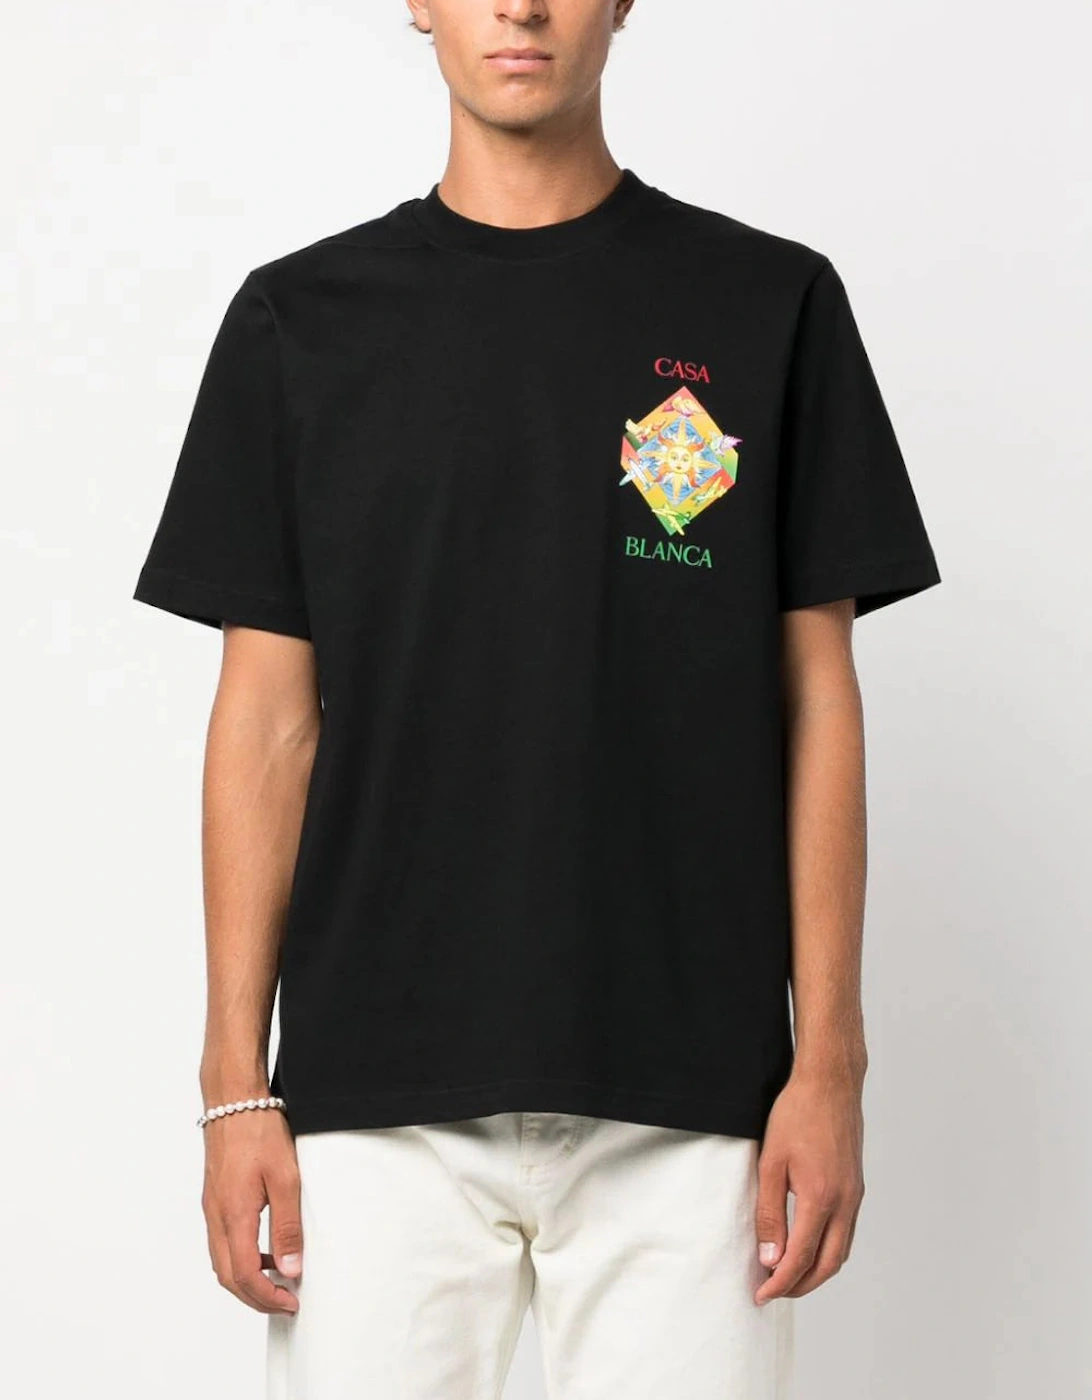 Les Elements Organic Cotton T-shirt Black